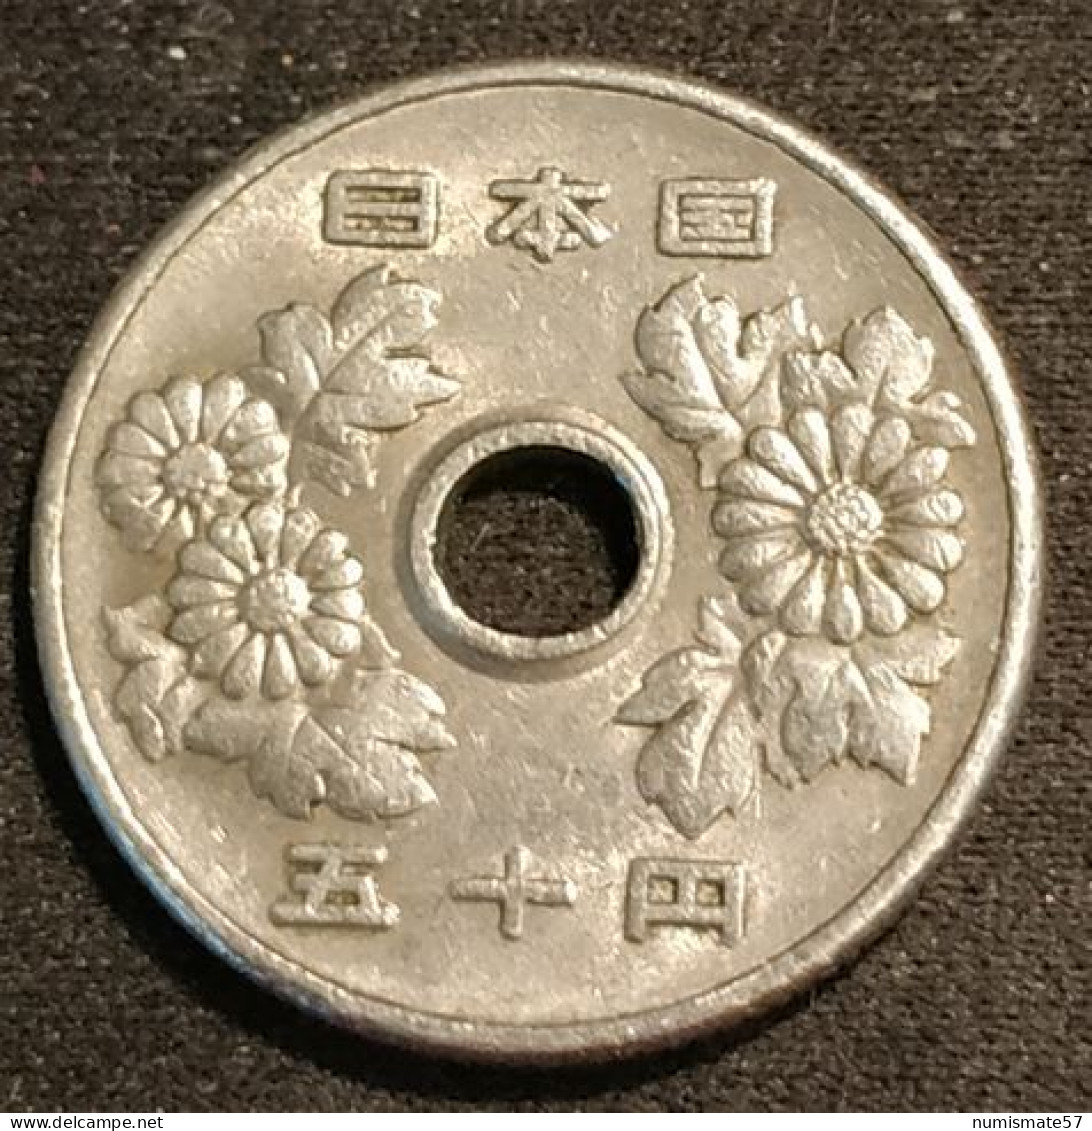 JAPON - JAPAN - 50 YEN 1973 - Shōwa - Year 48 - KM 81 - Japan